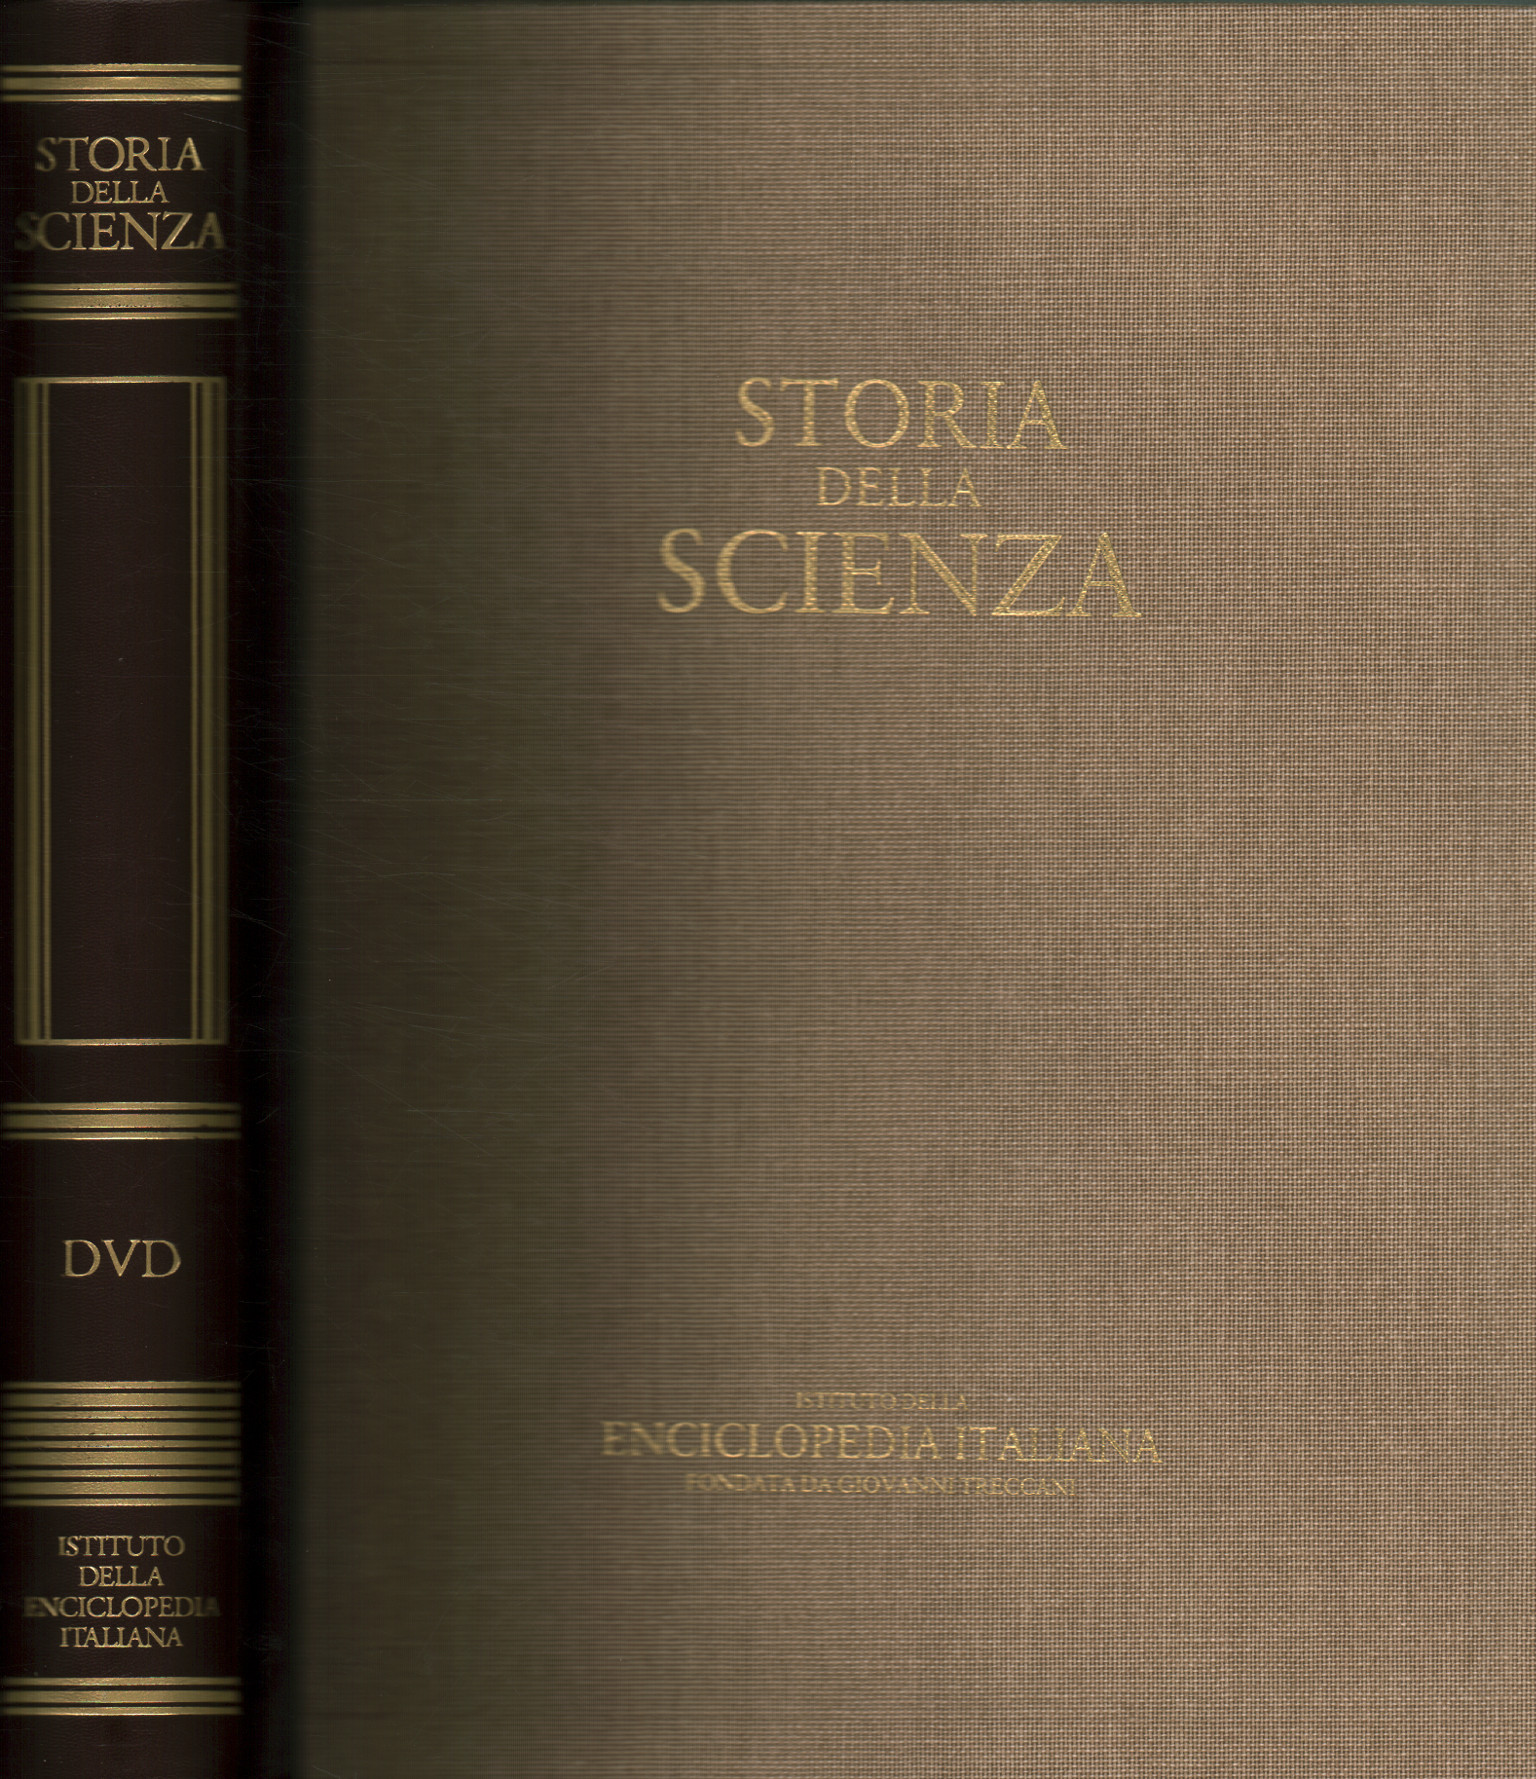 Historia de la ciencia DVD, Historia de la ciencia. DVD